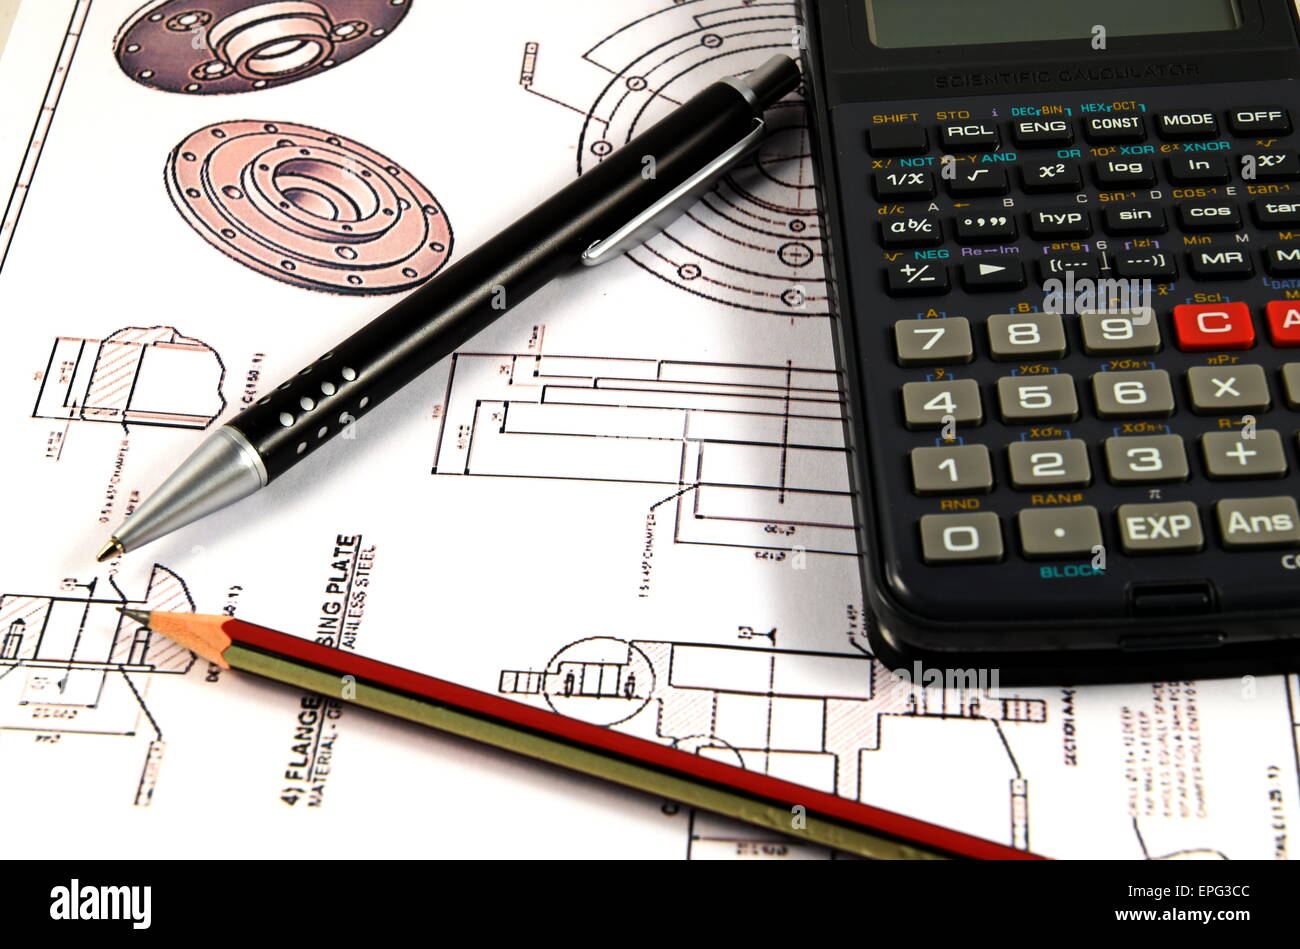 Calculatrice scientifique, stylo et crayon sur la carte Dessin technique  Photo Stock - Alamy